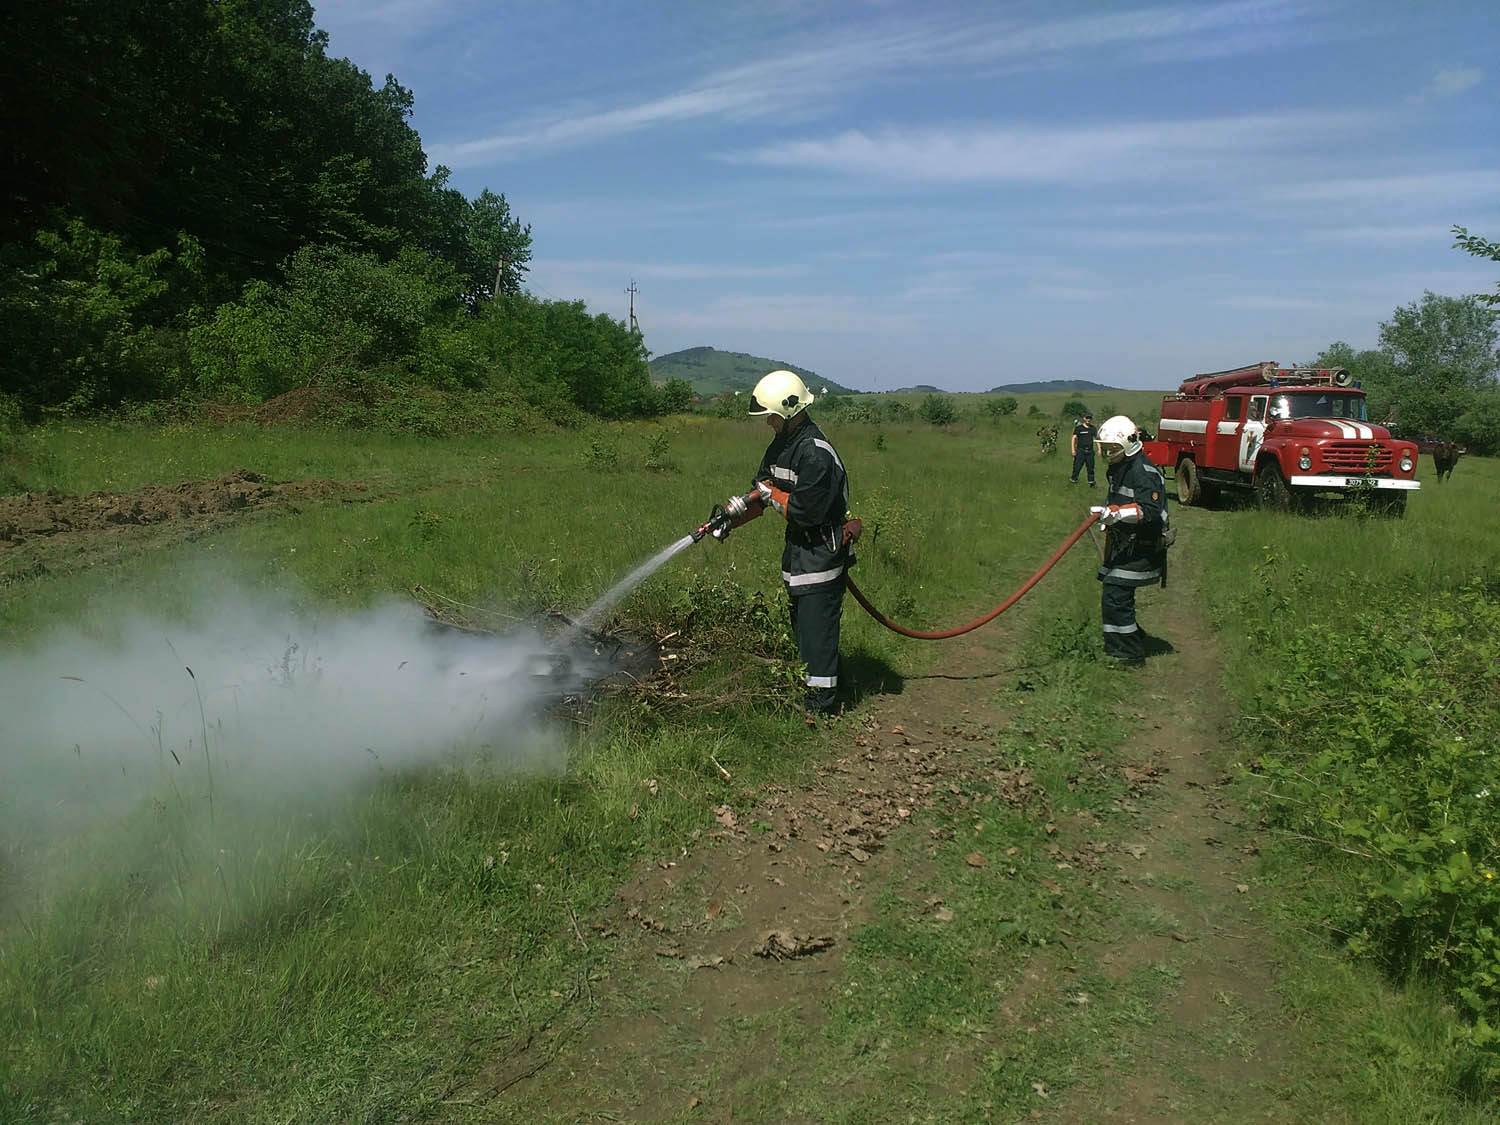 26 травня в районі с. Кідьош Берегівського району відбулися спільні навчання рятувальників та місцевого державного лісового господарства по гасінню пожеж в екосистемах.

